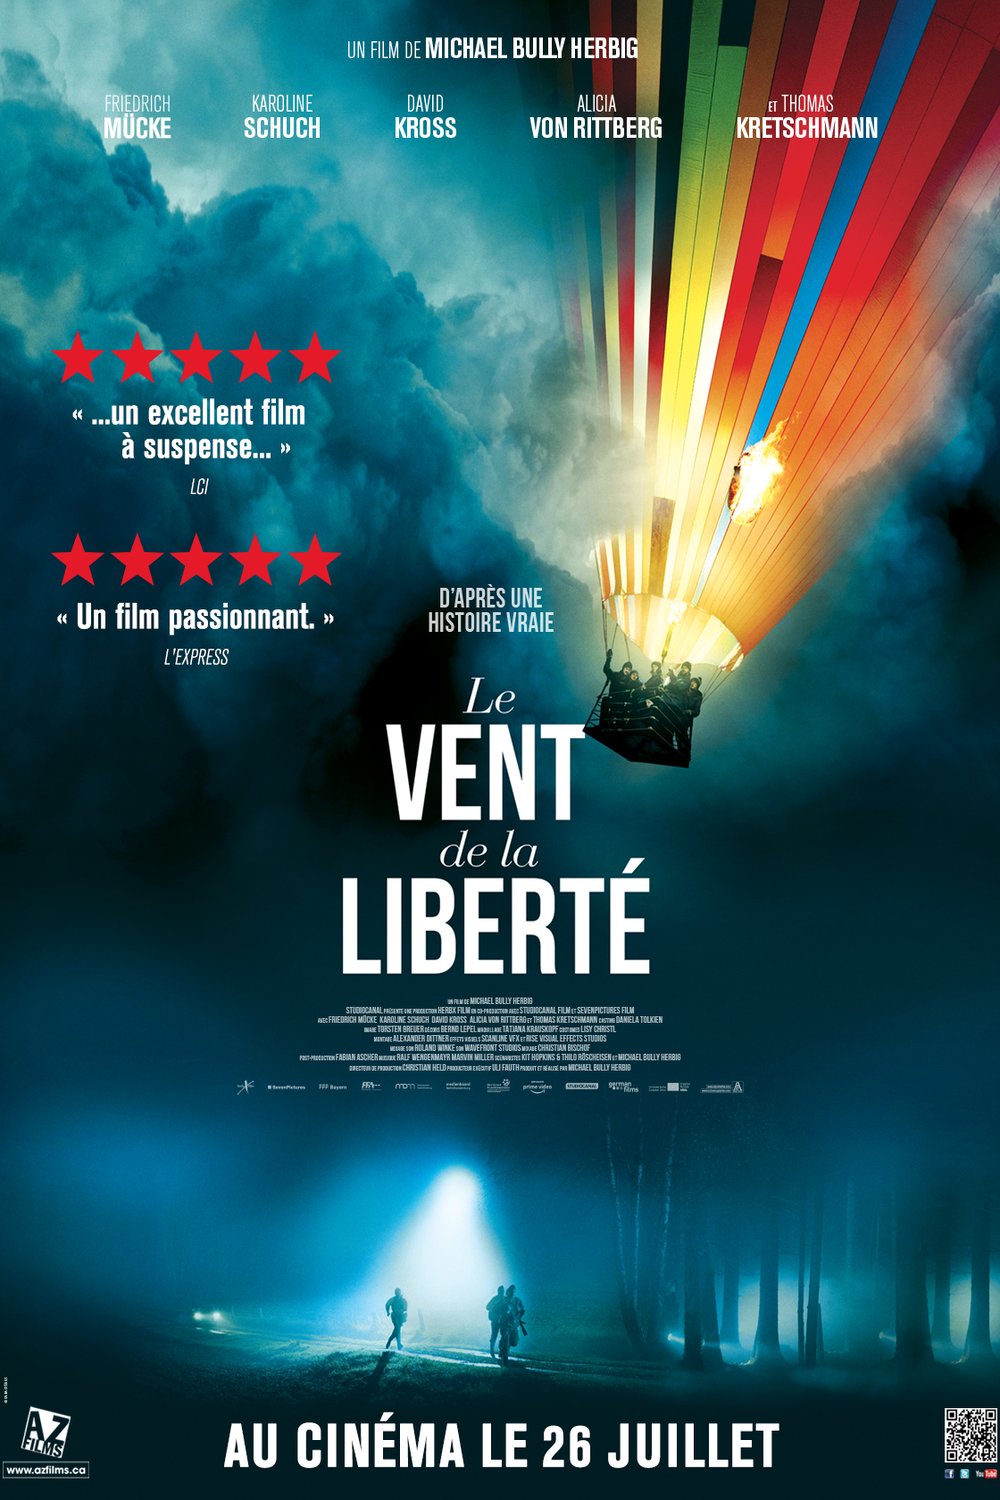 Poster of the movie Le vent de la liberté